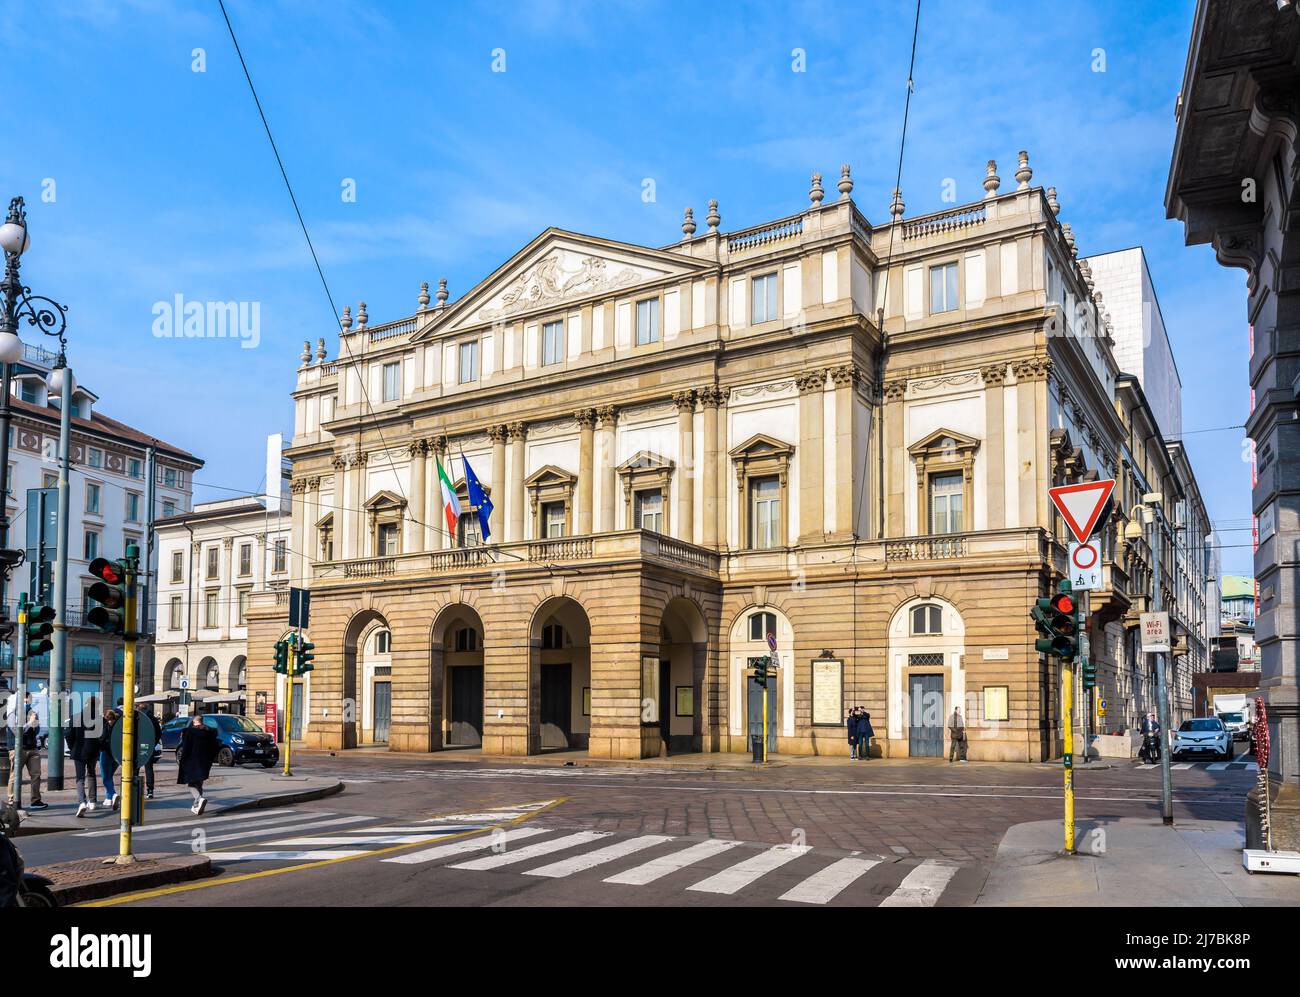 Vista general de la fachada de la ópera de La Scala (nombre completo Teatro alla Scala) en Milán, Italia. Foto de stock